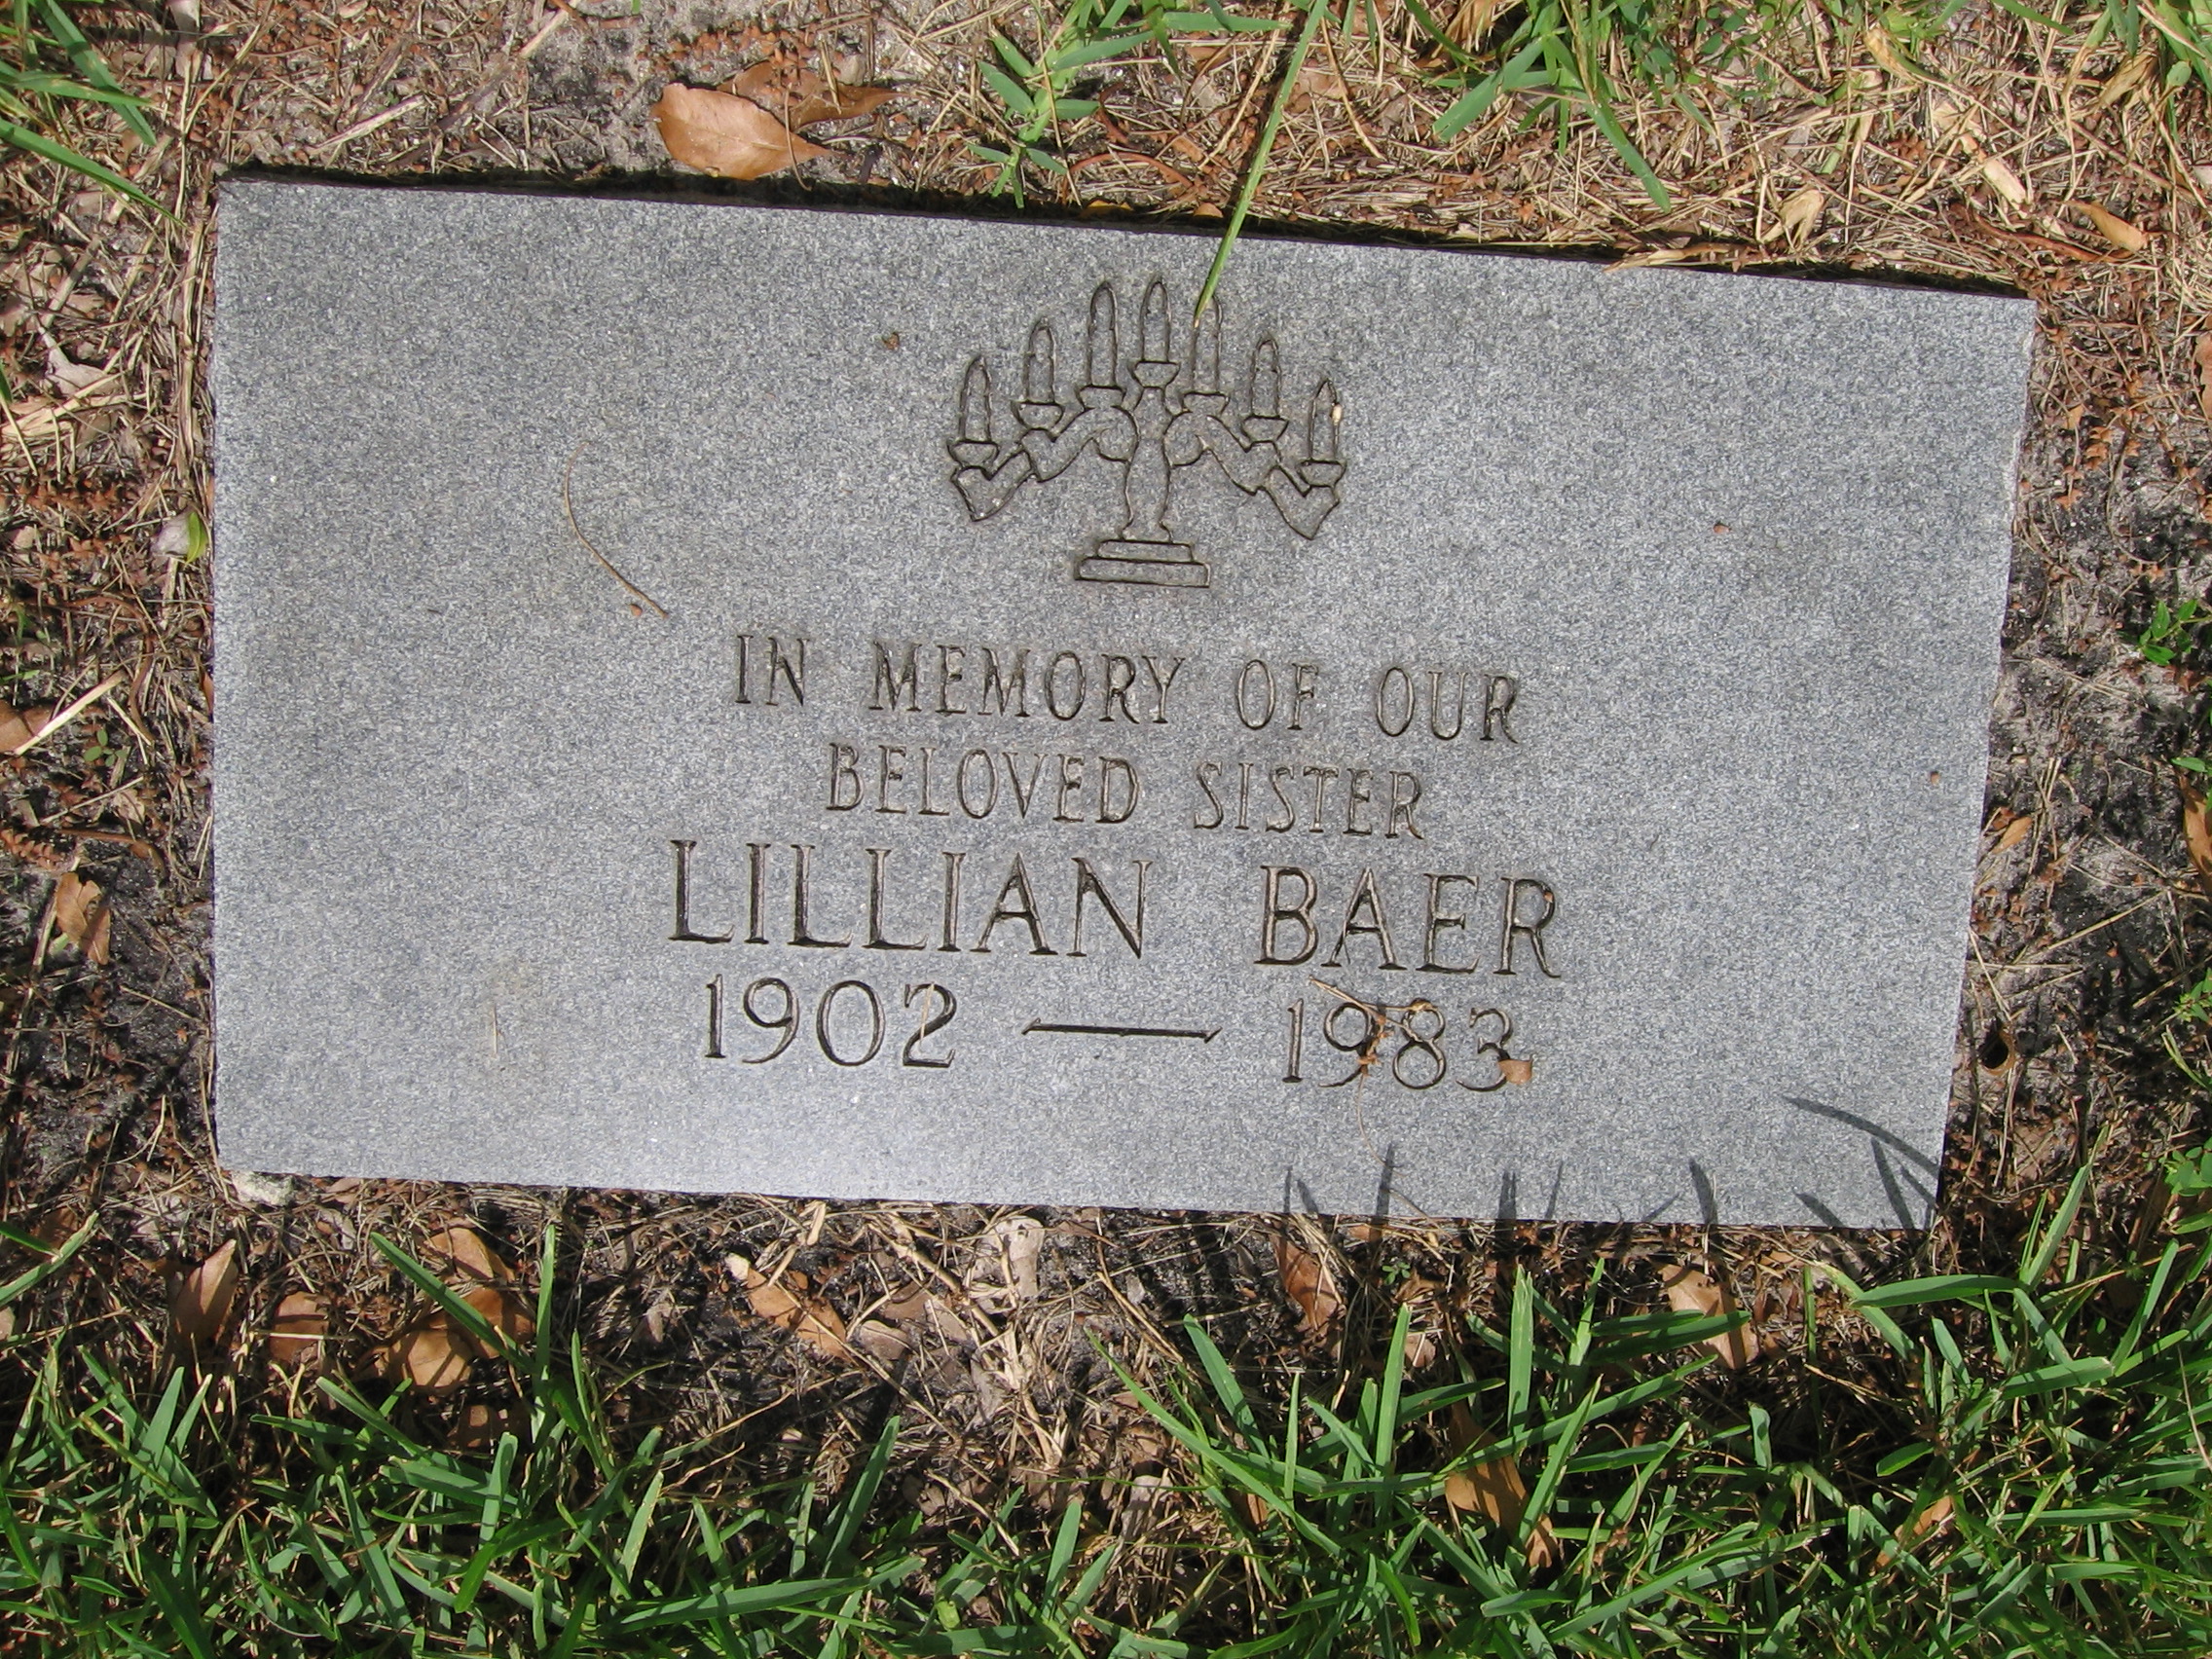 Lillian Baer